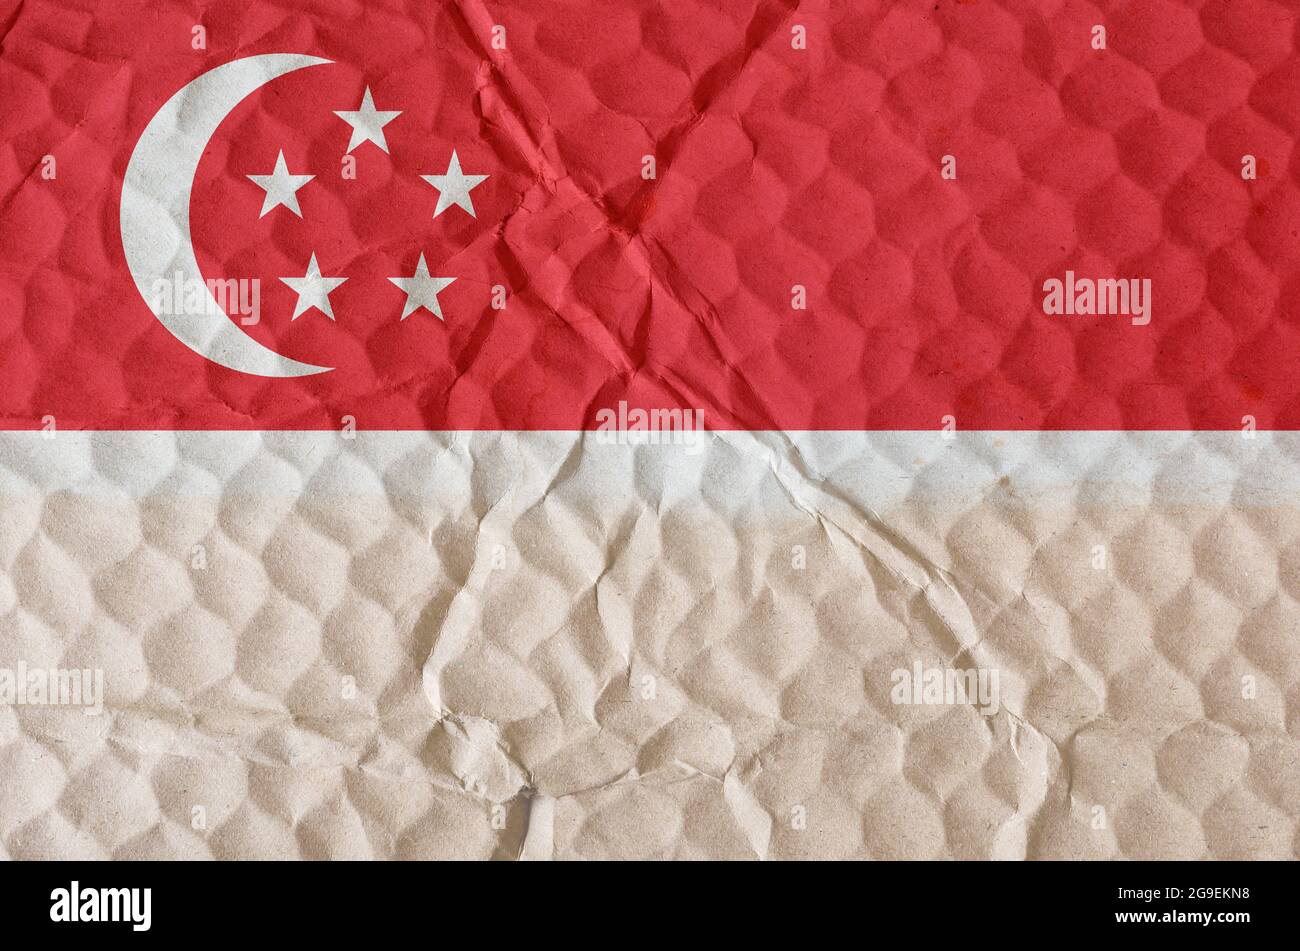 Rot-weiße Flagge der Republik Singapur auf einer unebenen strukturierten  Oberfläche. Die Nationalflagge des Stadtstaates auf den Inseln  Südostasiens. C Stockfotografie - Alamy